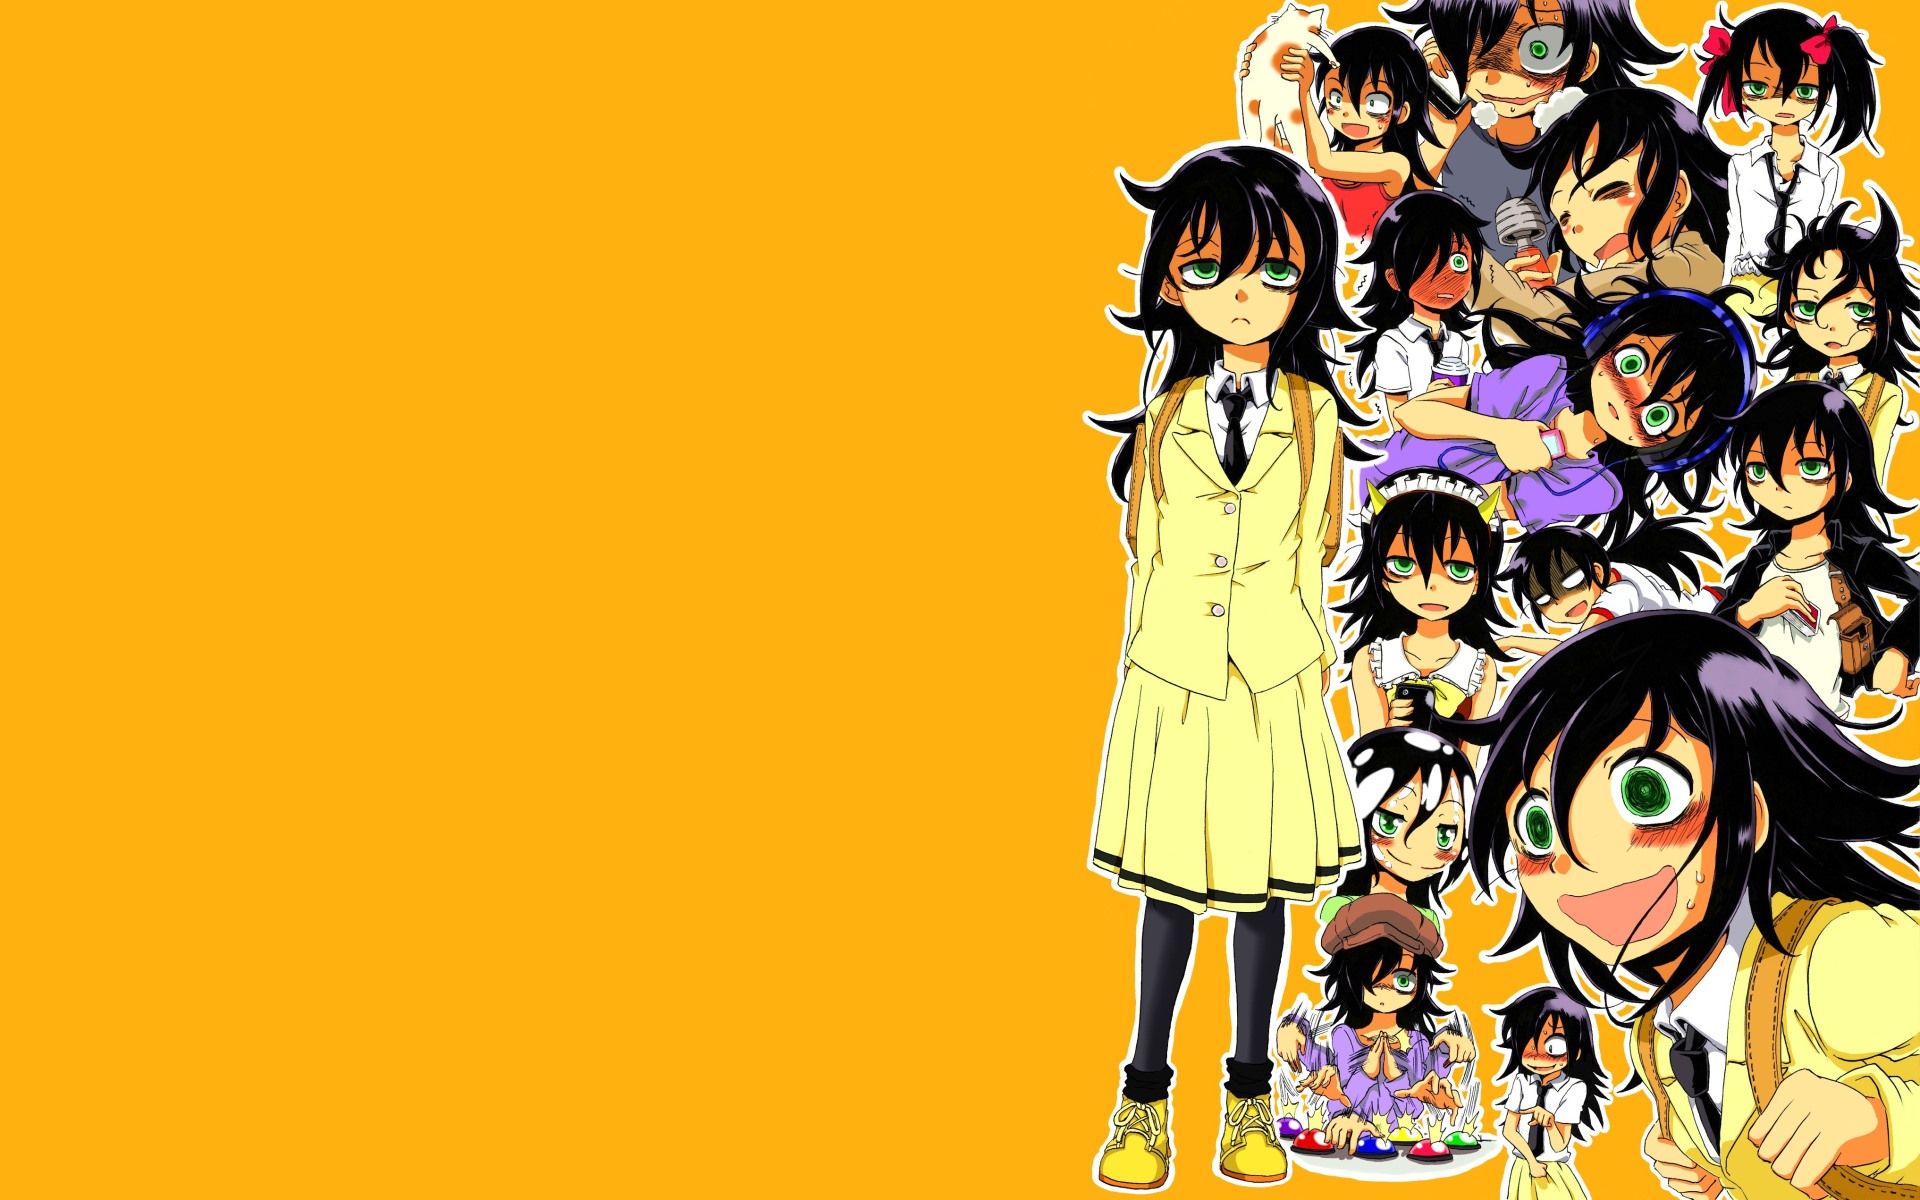 Tomoko Kuroki - Iconic Anime Character